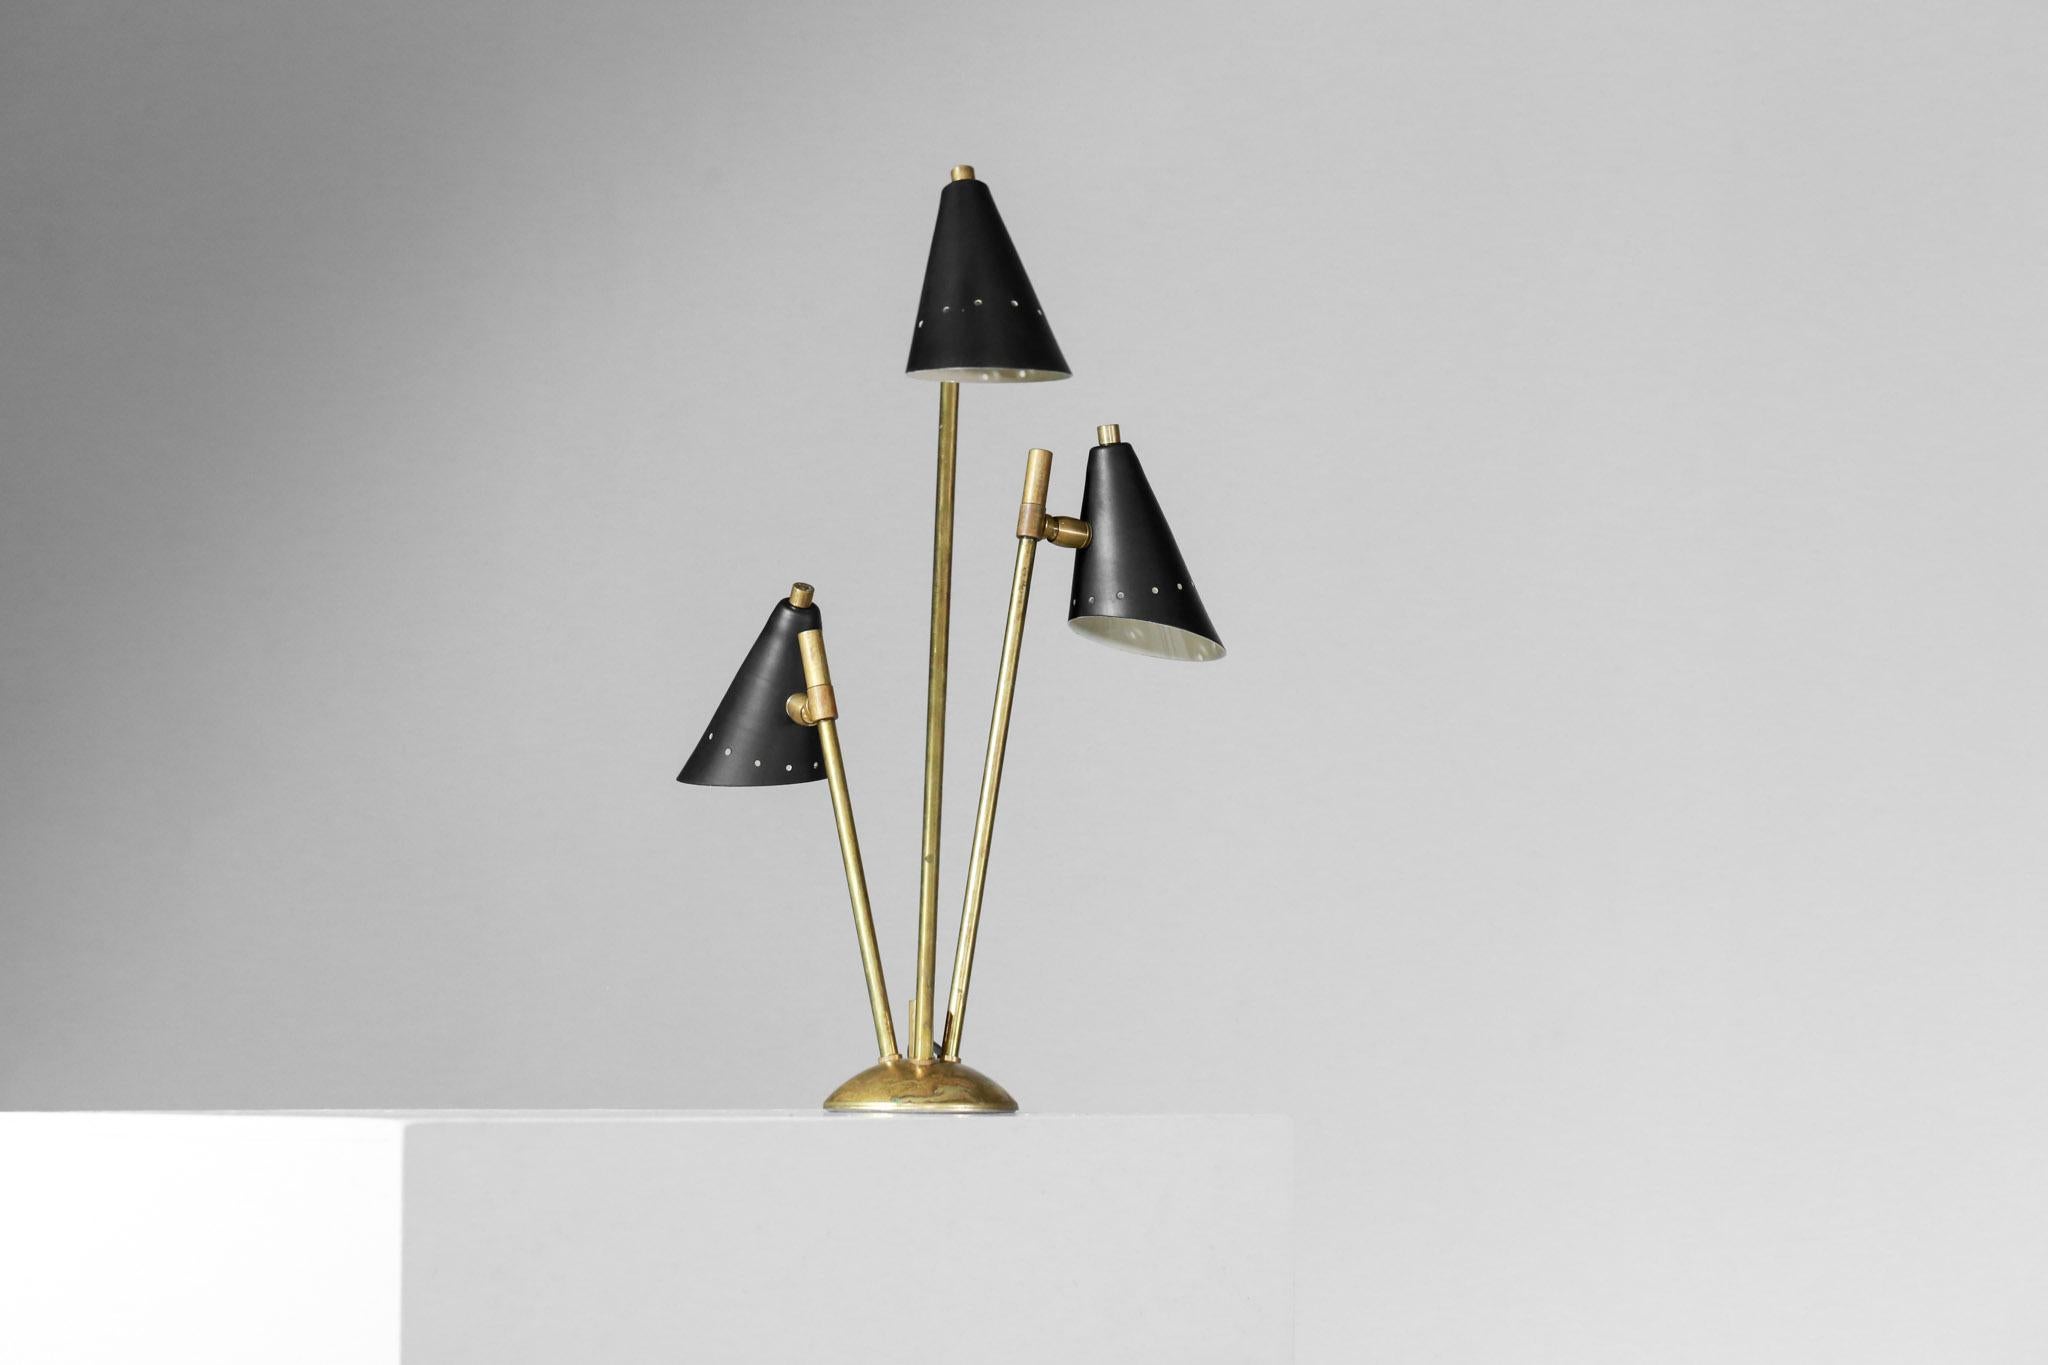 Lampe de bureau ou de chevet moderne dans le style Gino Sarfati des années 1960.
Structure en laiton massif et trois abat-jour en métal laqué noir ou blanc. Hauteur totale 48 cm, diamètre total 34 cm (diamètre de la base 11 cm et diamètre de l'ombre